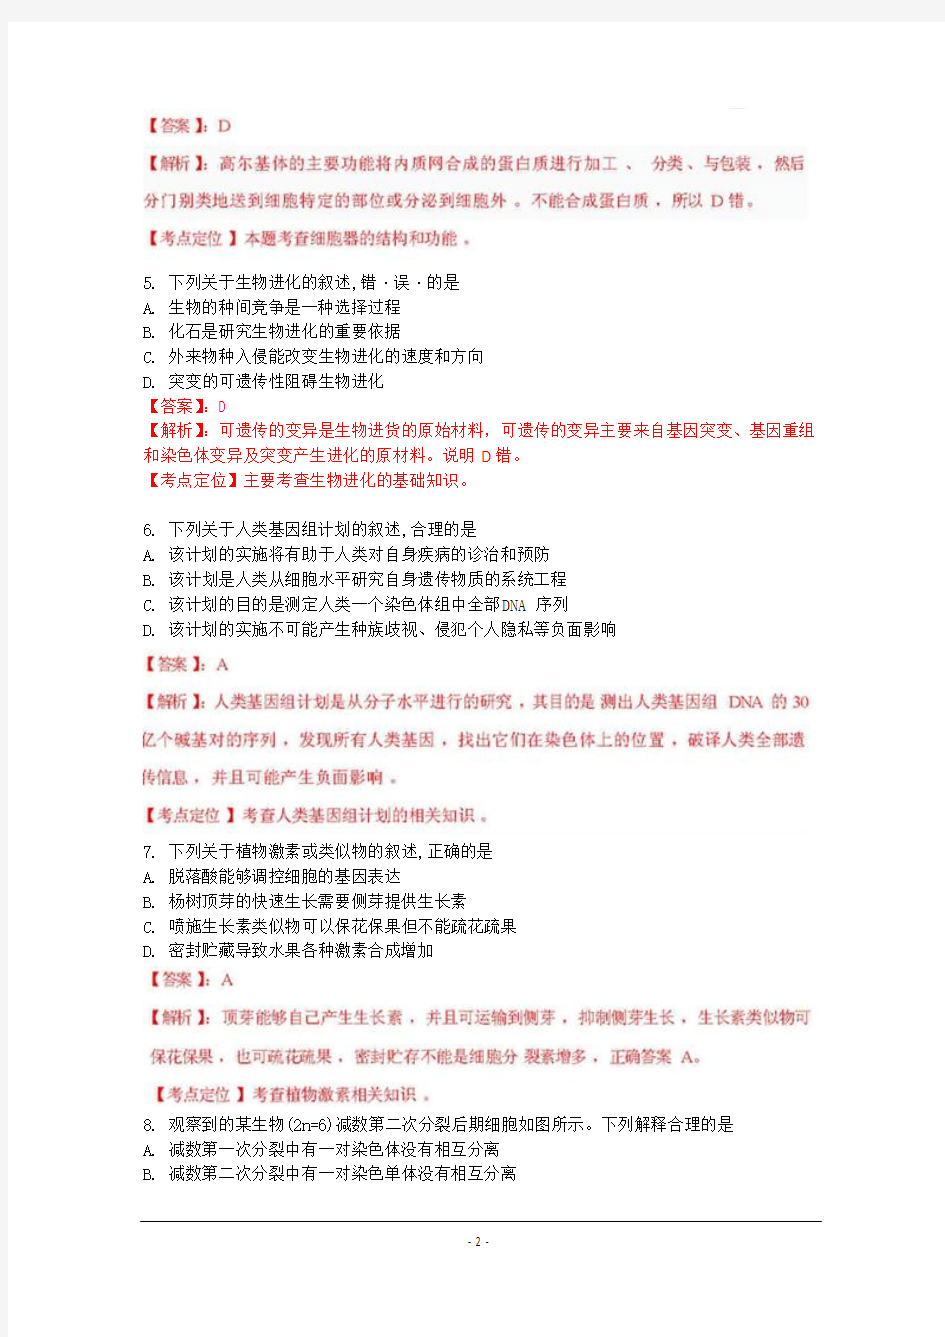 2012年高考真题——生物(江苏卷)解析版(1)